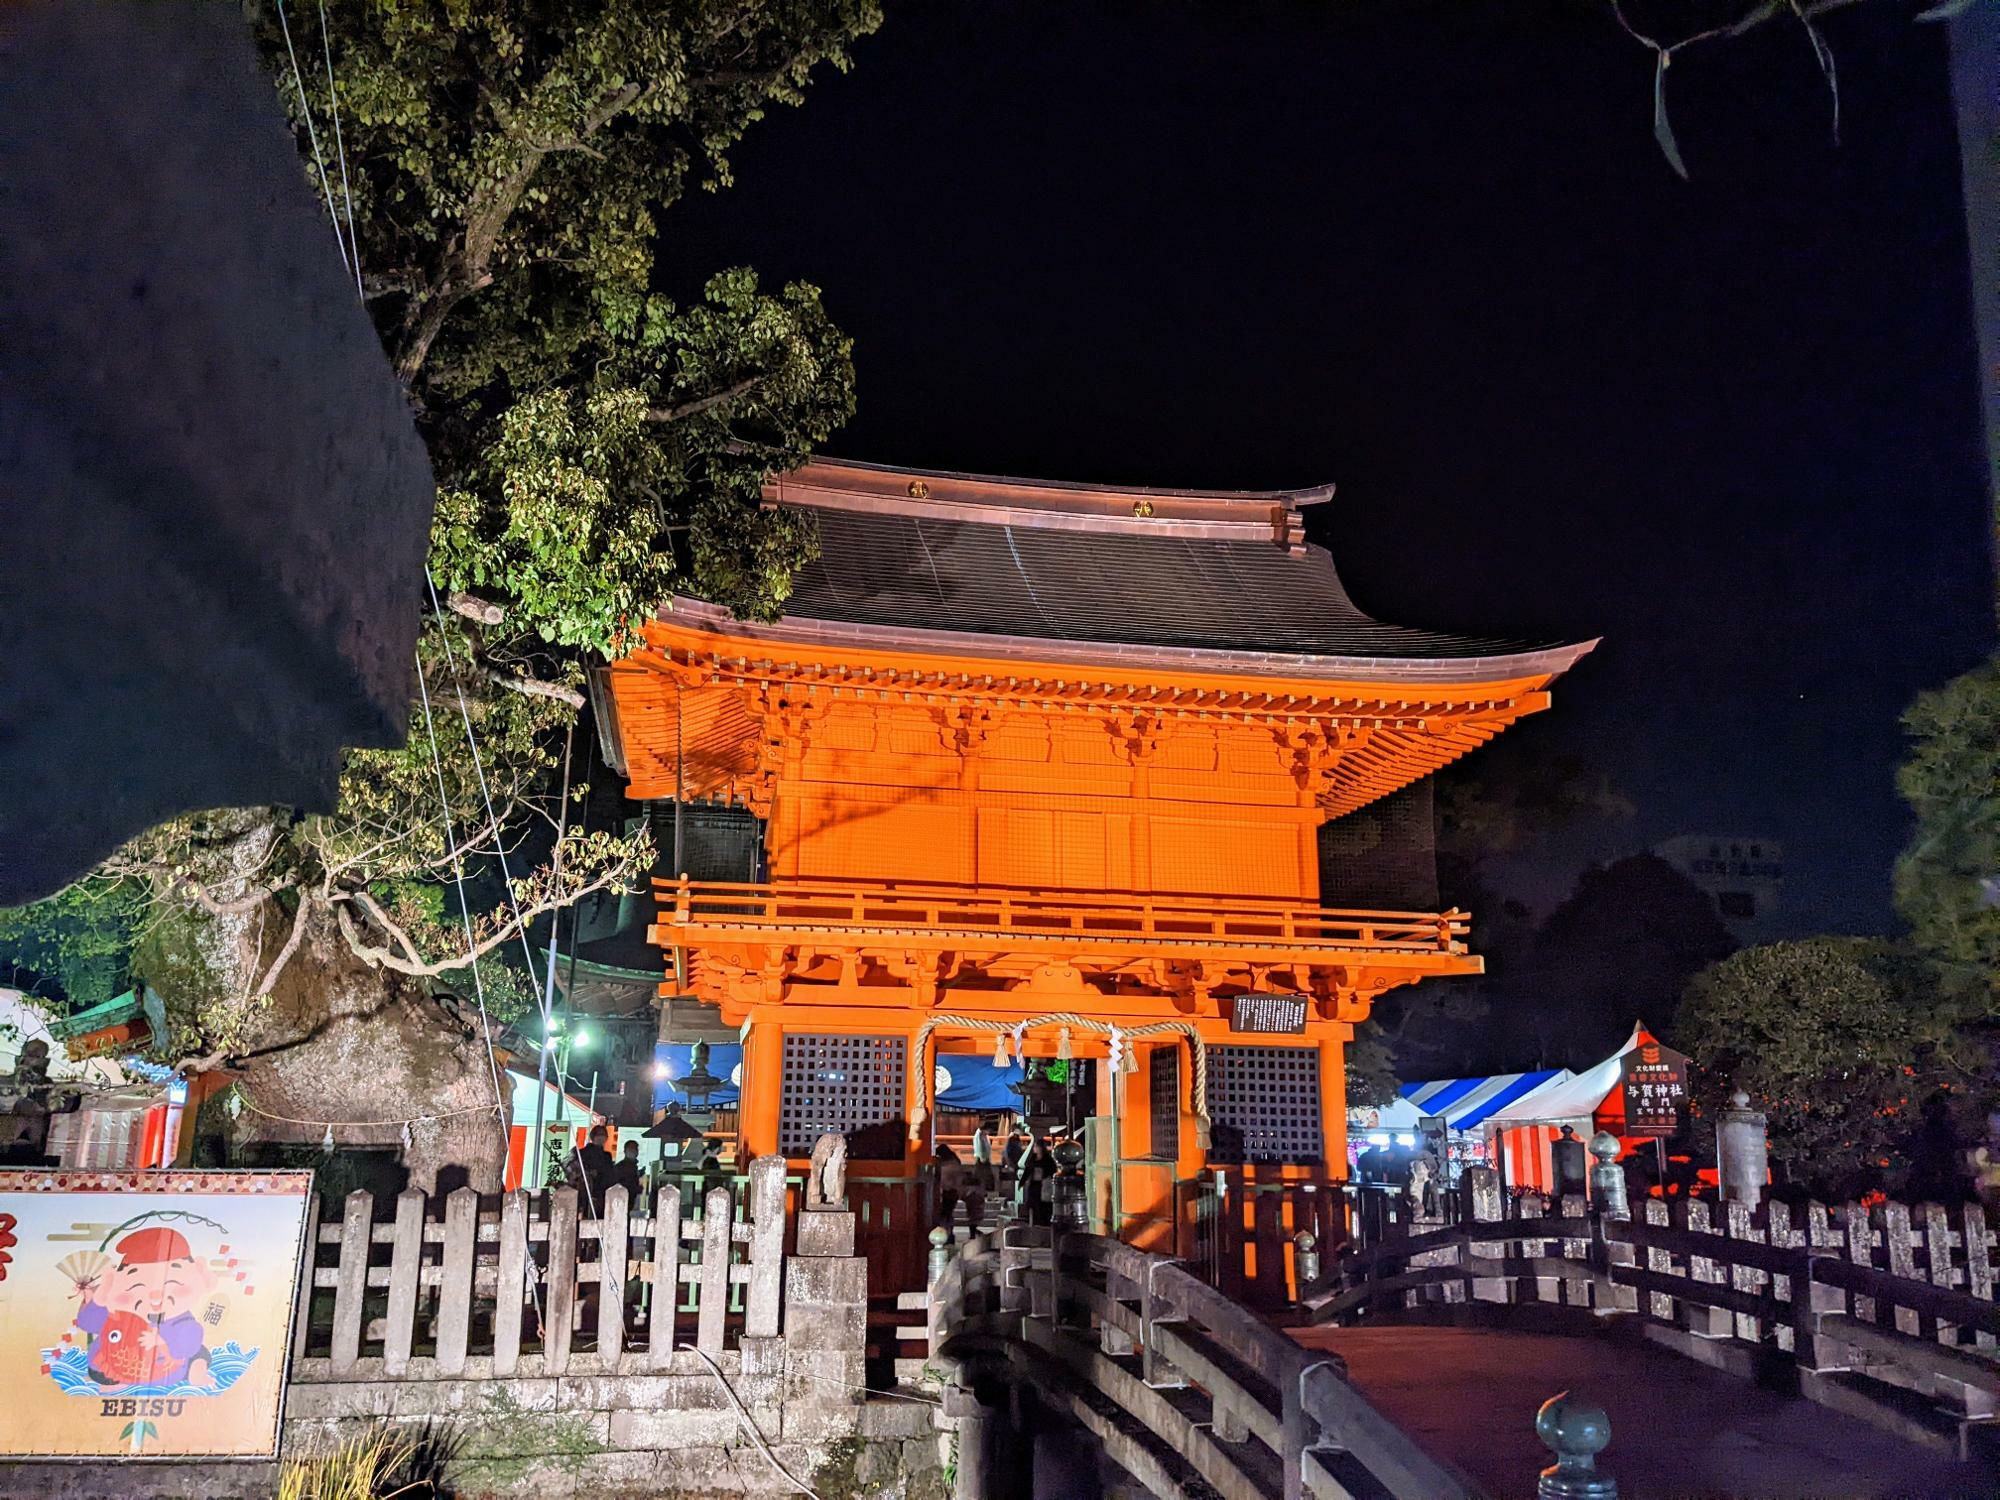 与賀神社の楼門